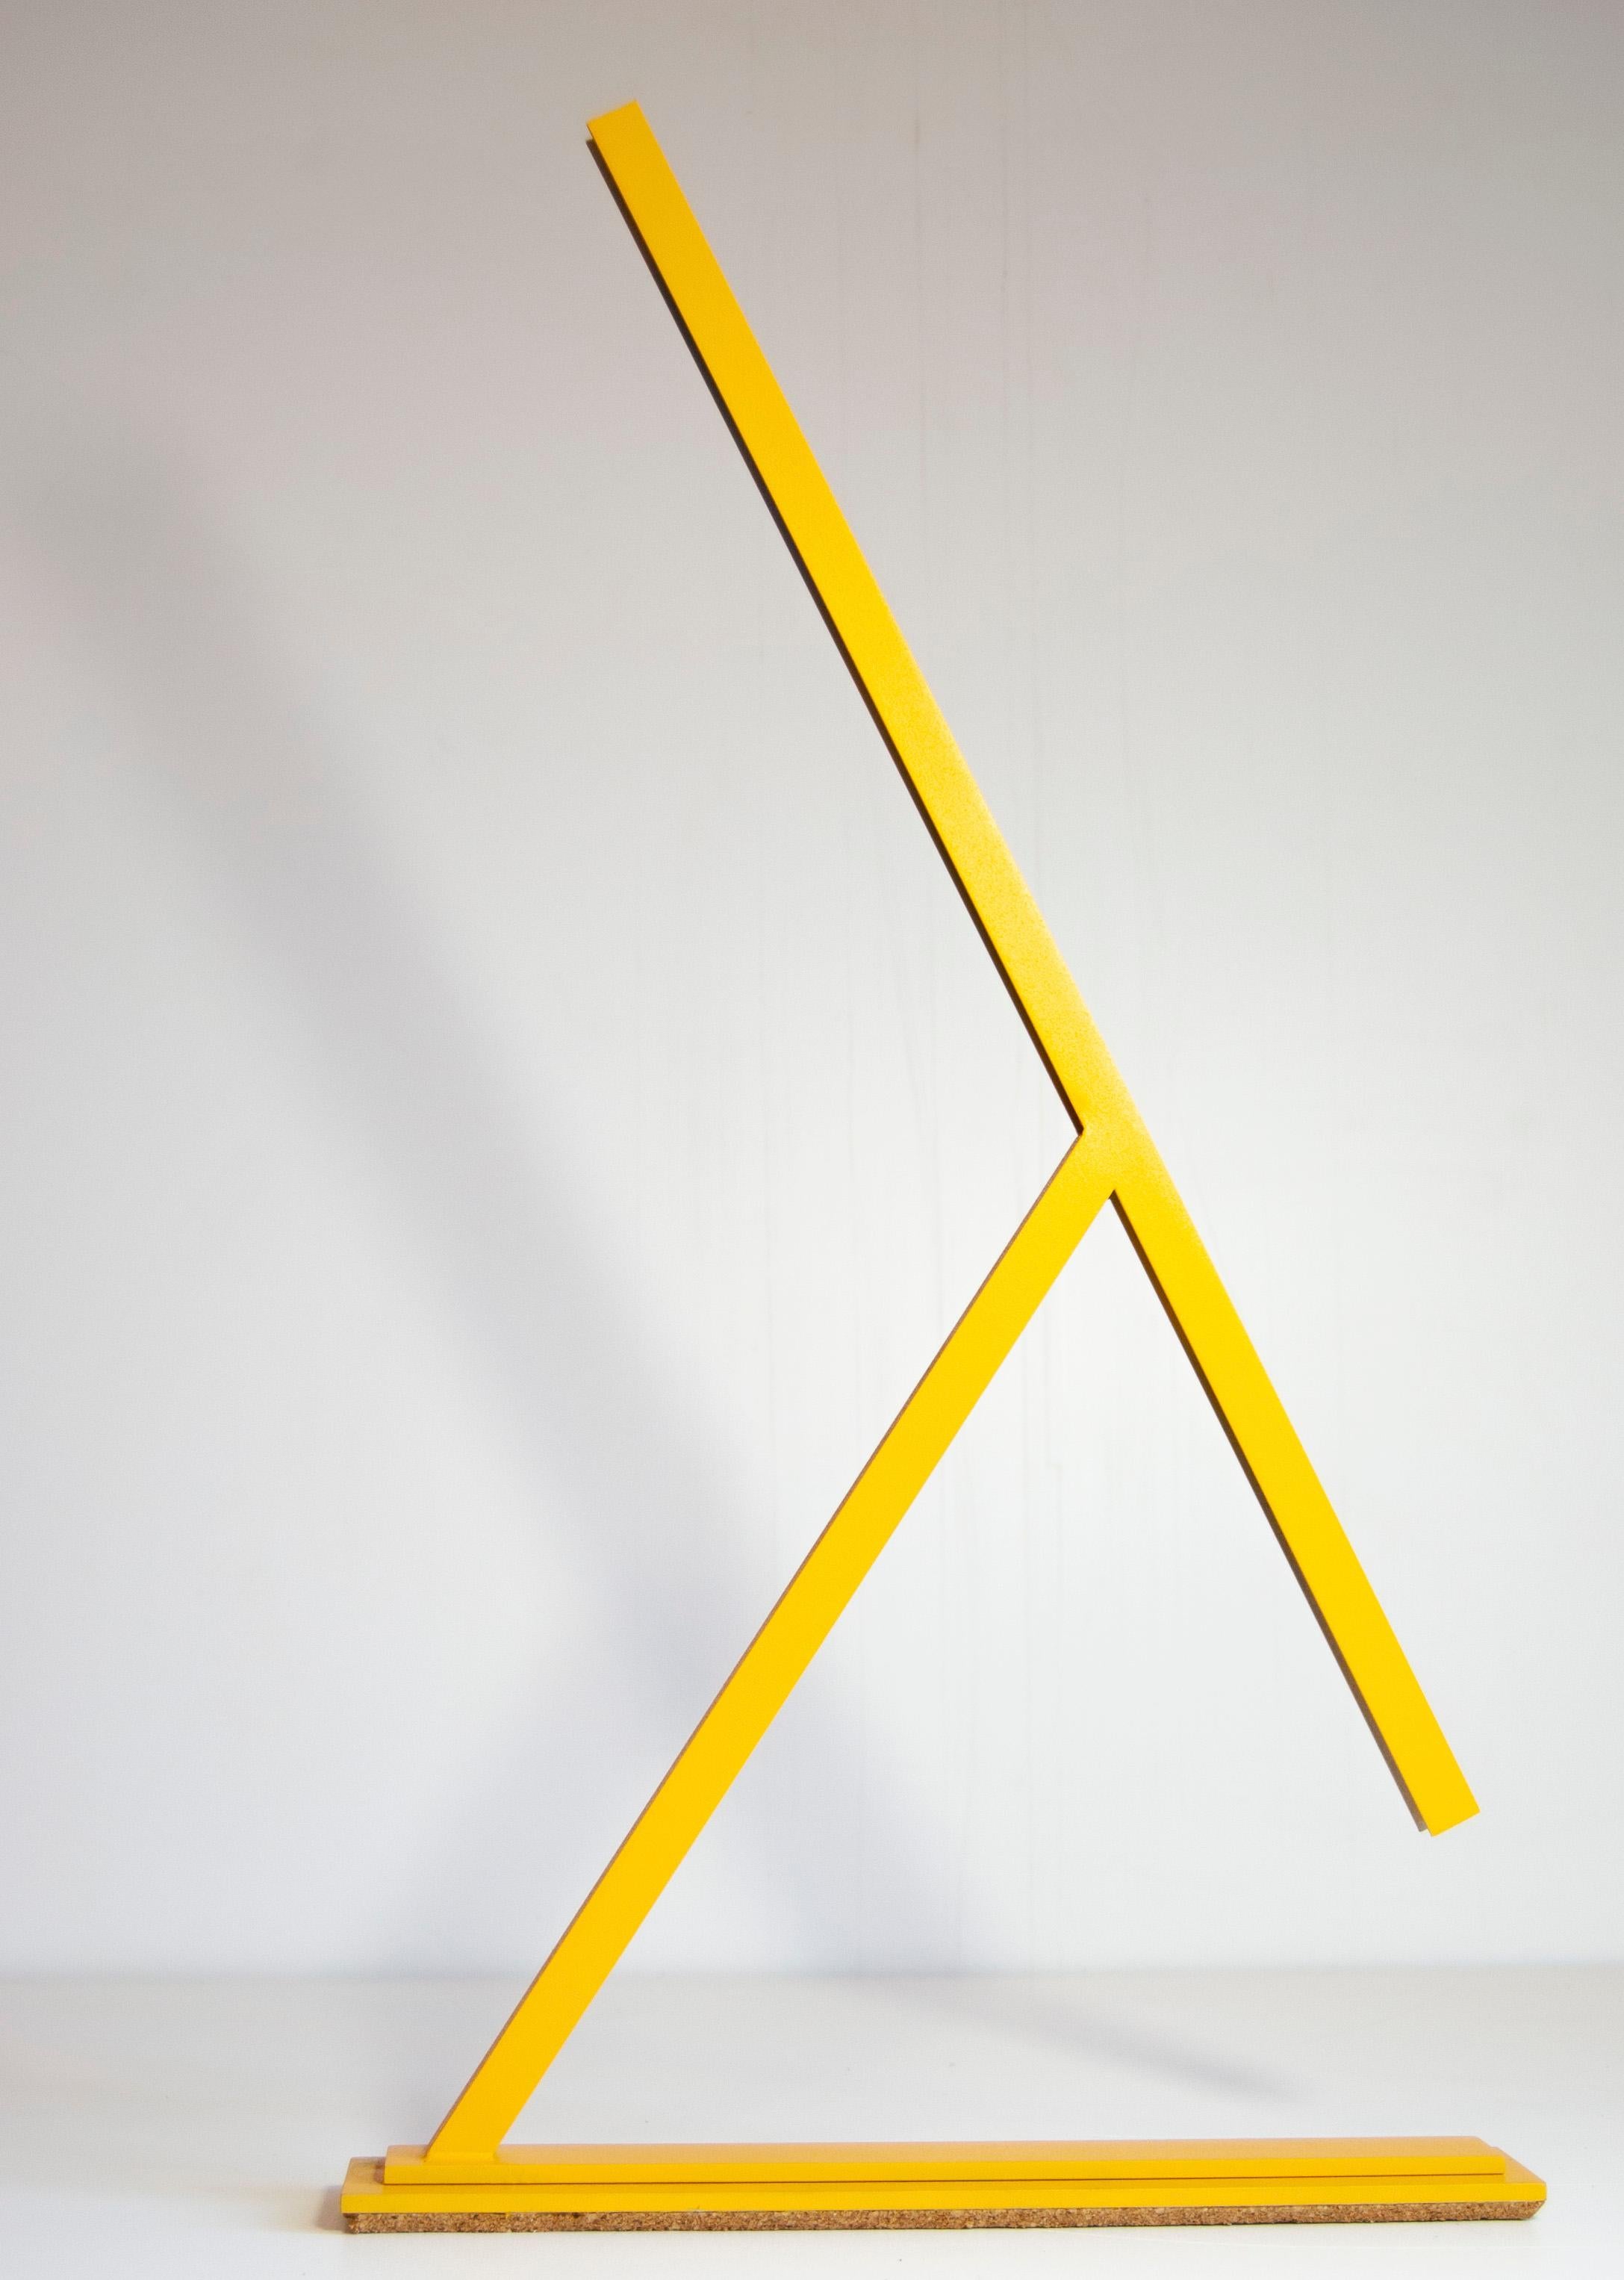 Achille ist eine von Tommaso Cristofaro entworfene Tischleuchte, die nur auf Bestellung und in einem hochgradig handwerklichen Verfahren hergestellt wird.
Für die Konstruktion werden Materialien wie 1,5 mm dickes Aluminium verwendet, das nach einer